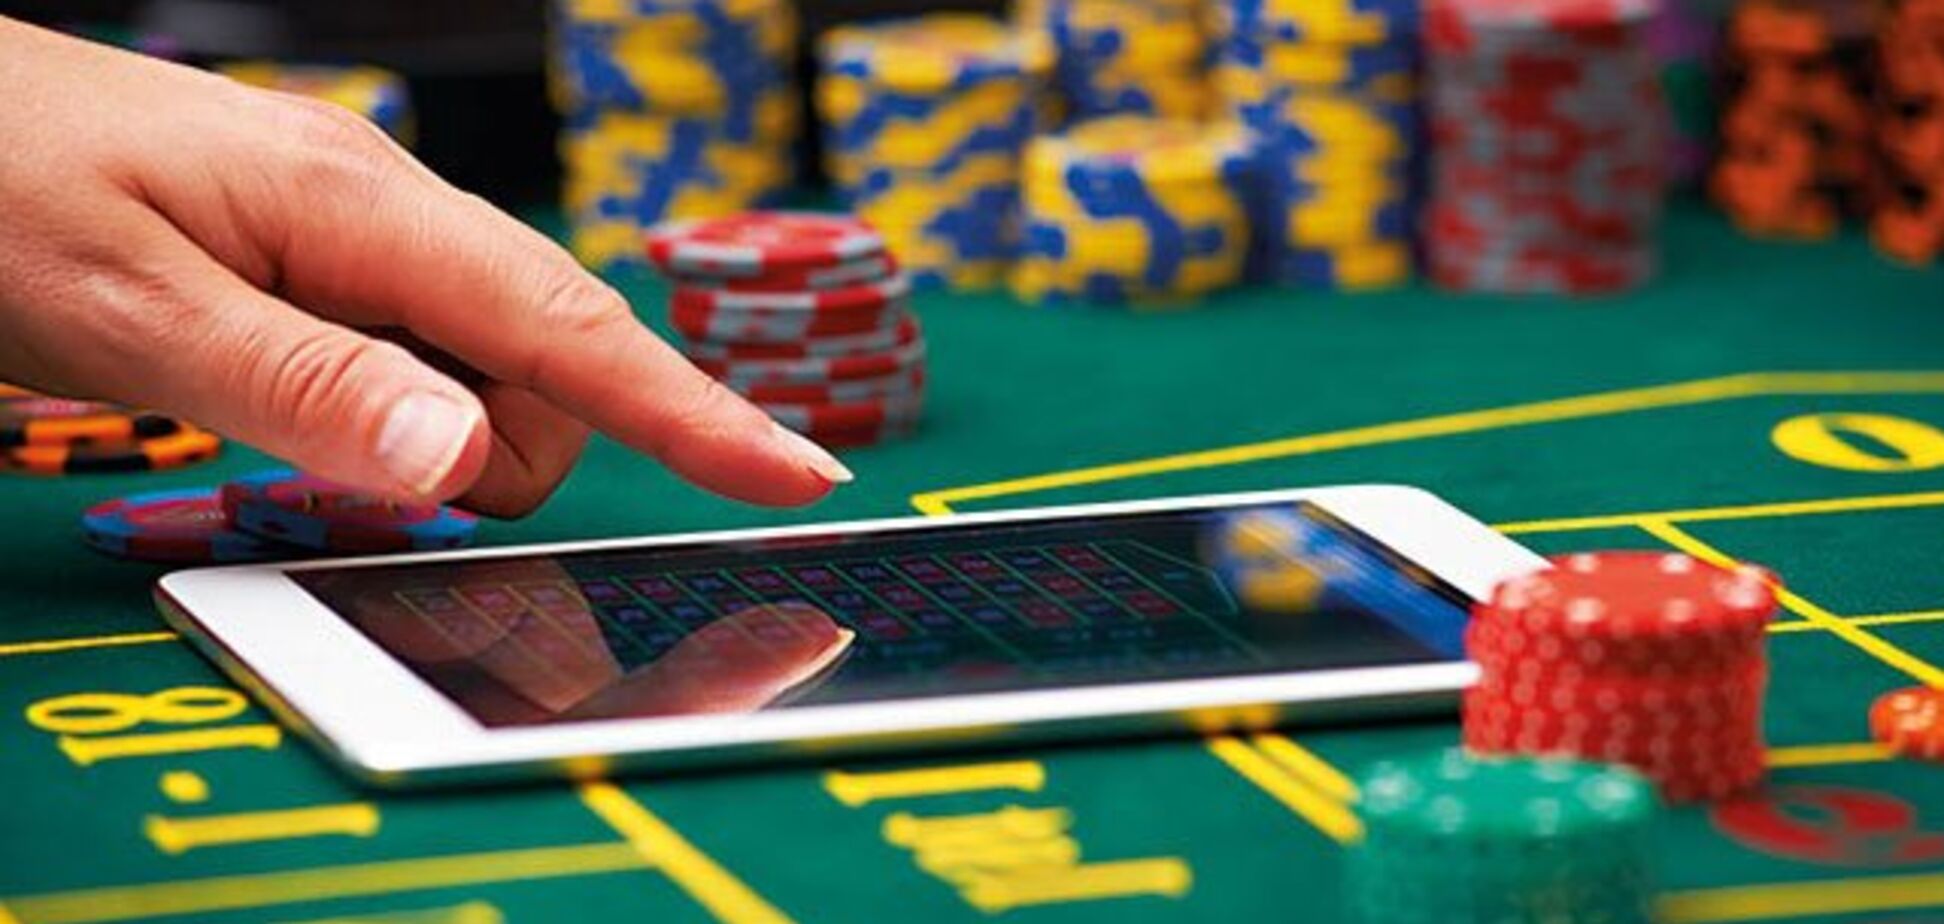 Експерт не бачить логіки у прив'язці онлайн-казино до букмекерських контор